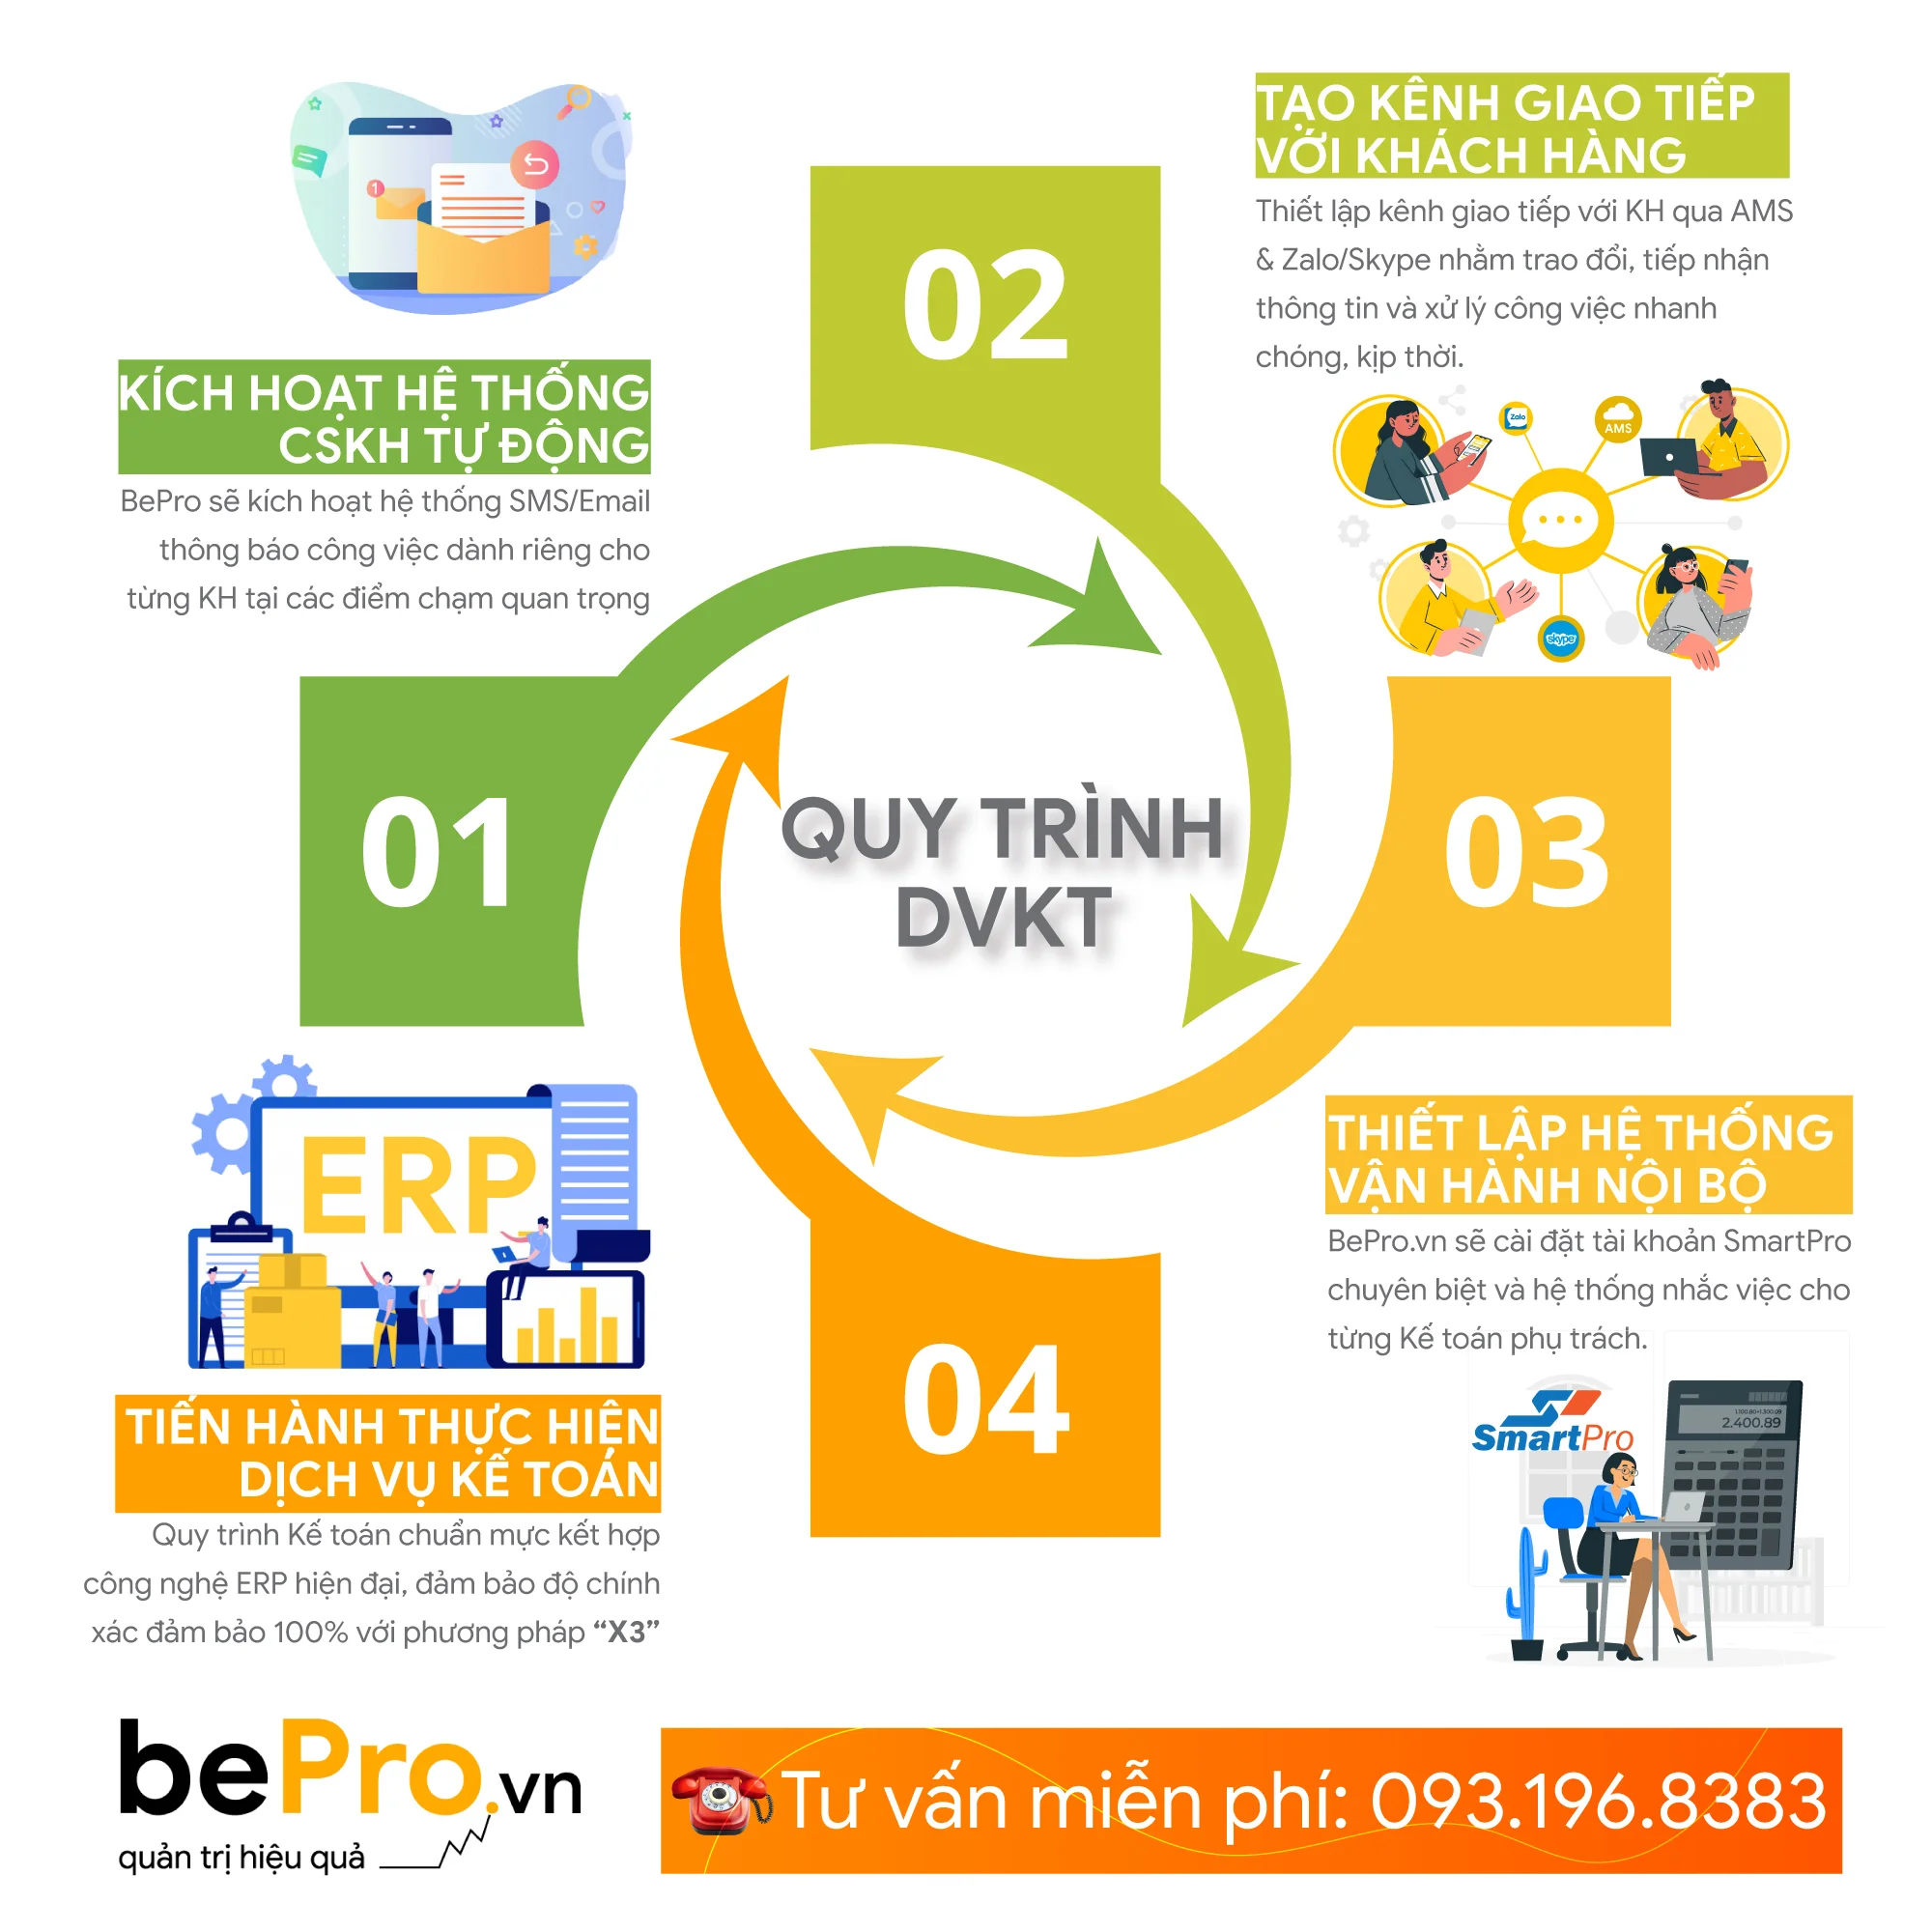 Sự khác biệt của bePro.vn : Quy trình dịch vụ kế toán chuyên nghiệp